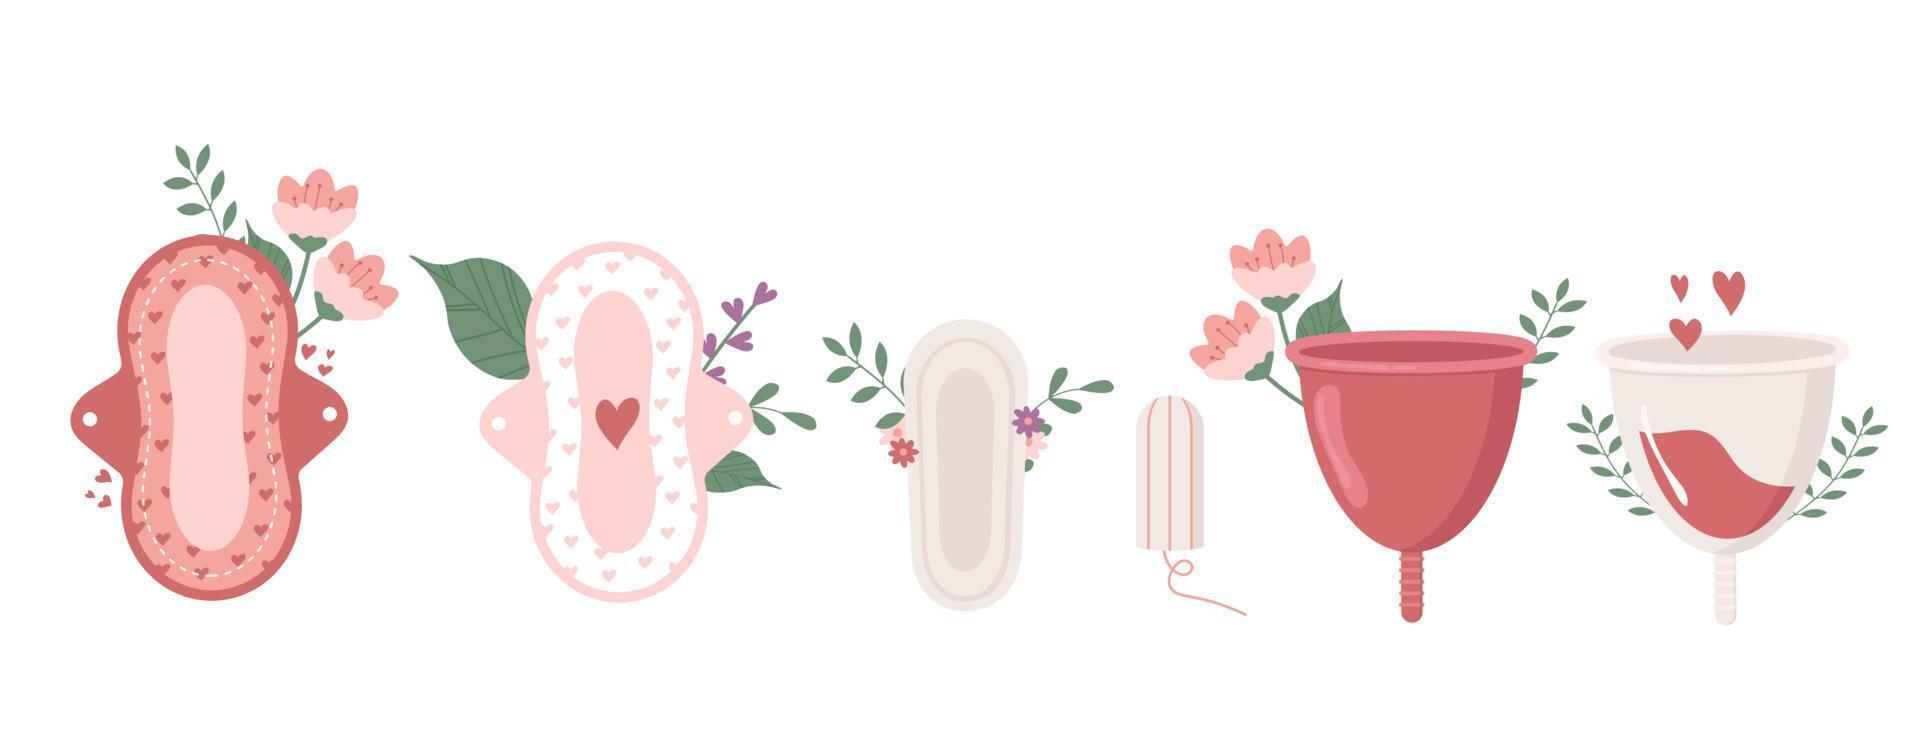 kit de higiene menstrual para mulheres. ilustração de estilo simples de almofadas, tampões, copos menstruais. vetor